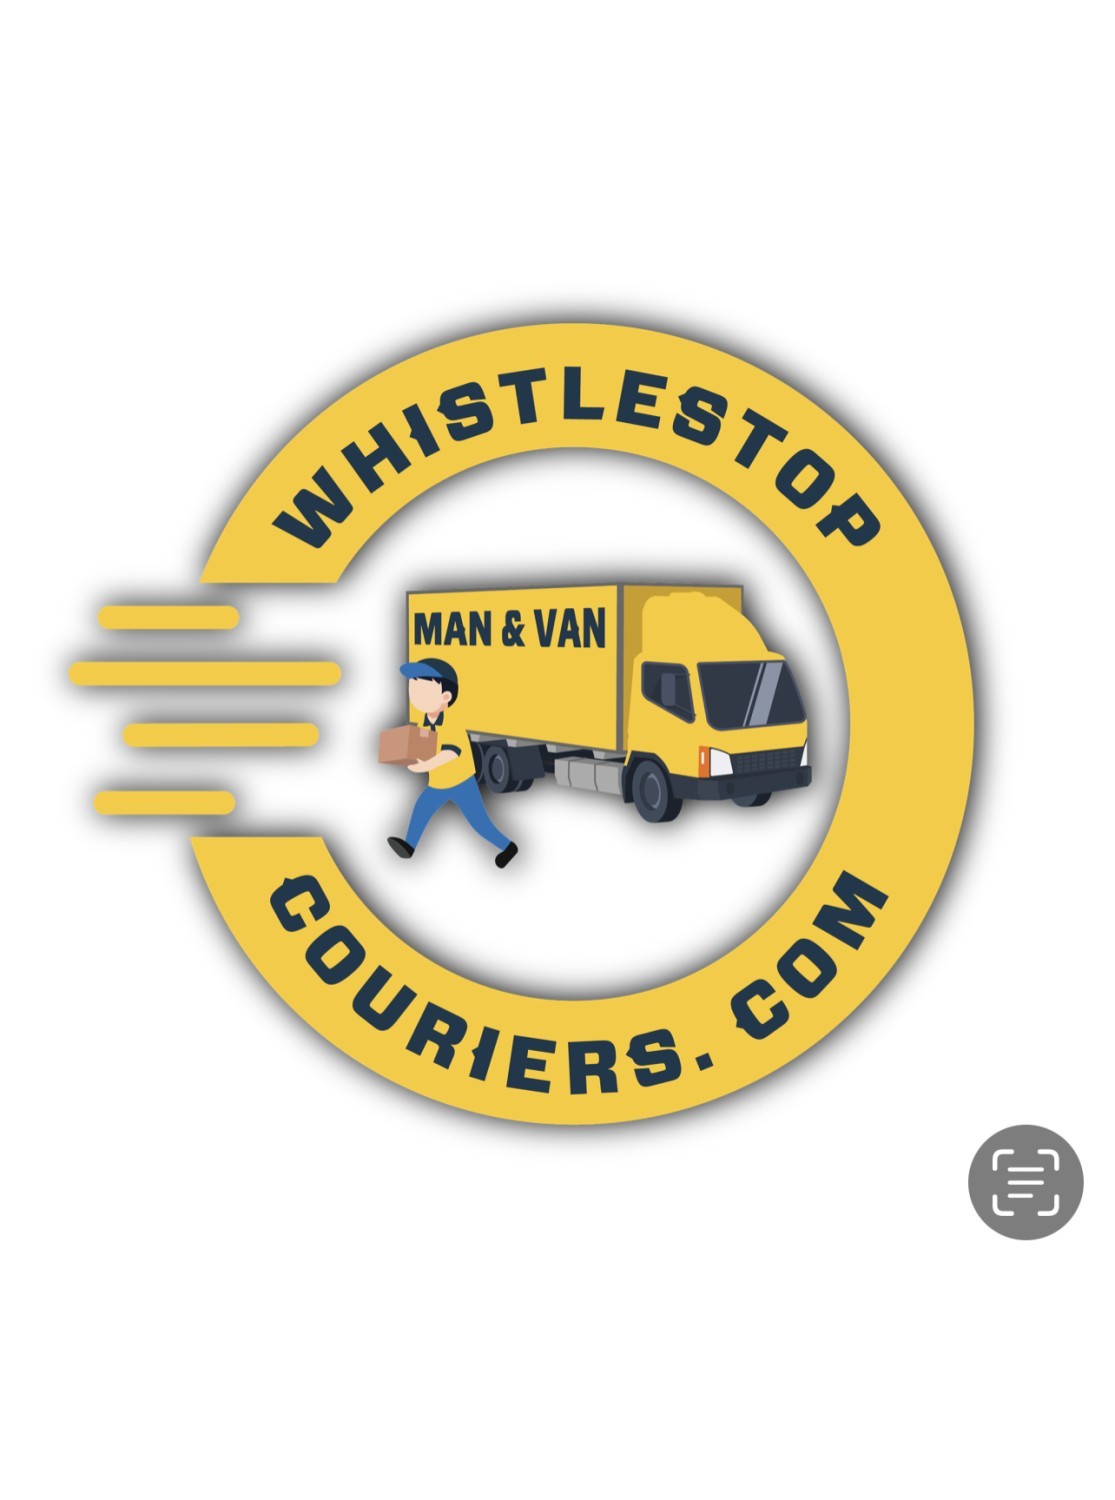 Whistlestop Couriers - Man & Van London | UK